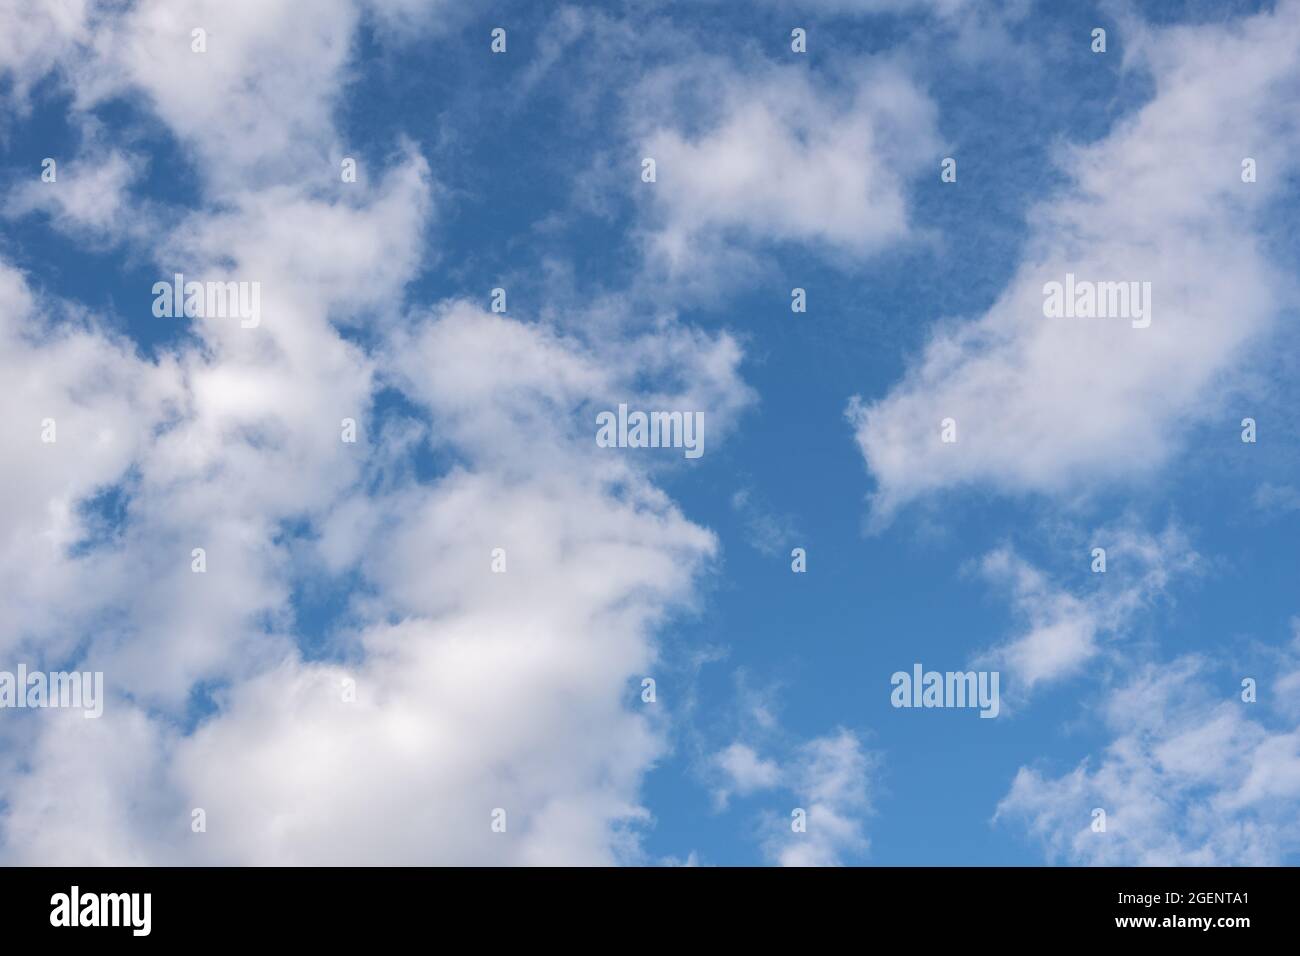 Schöne flauschige Cumulus Wolken am blauen Himmel. Perfekter Hintergrund von blauem Himmel und weißen Wolken für Ihre Fotos, Design-Layout. Stockfoto